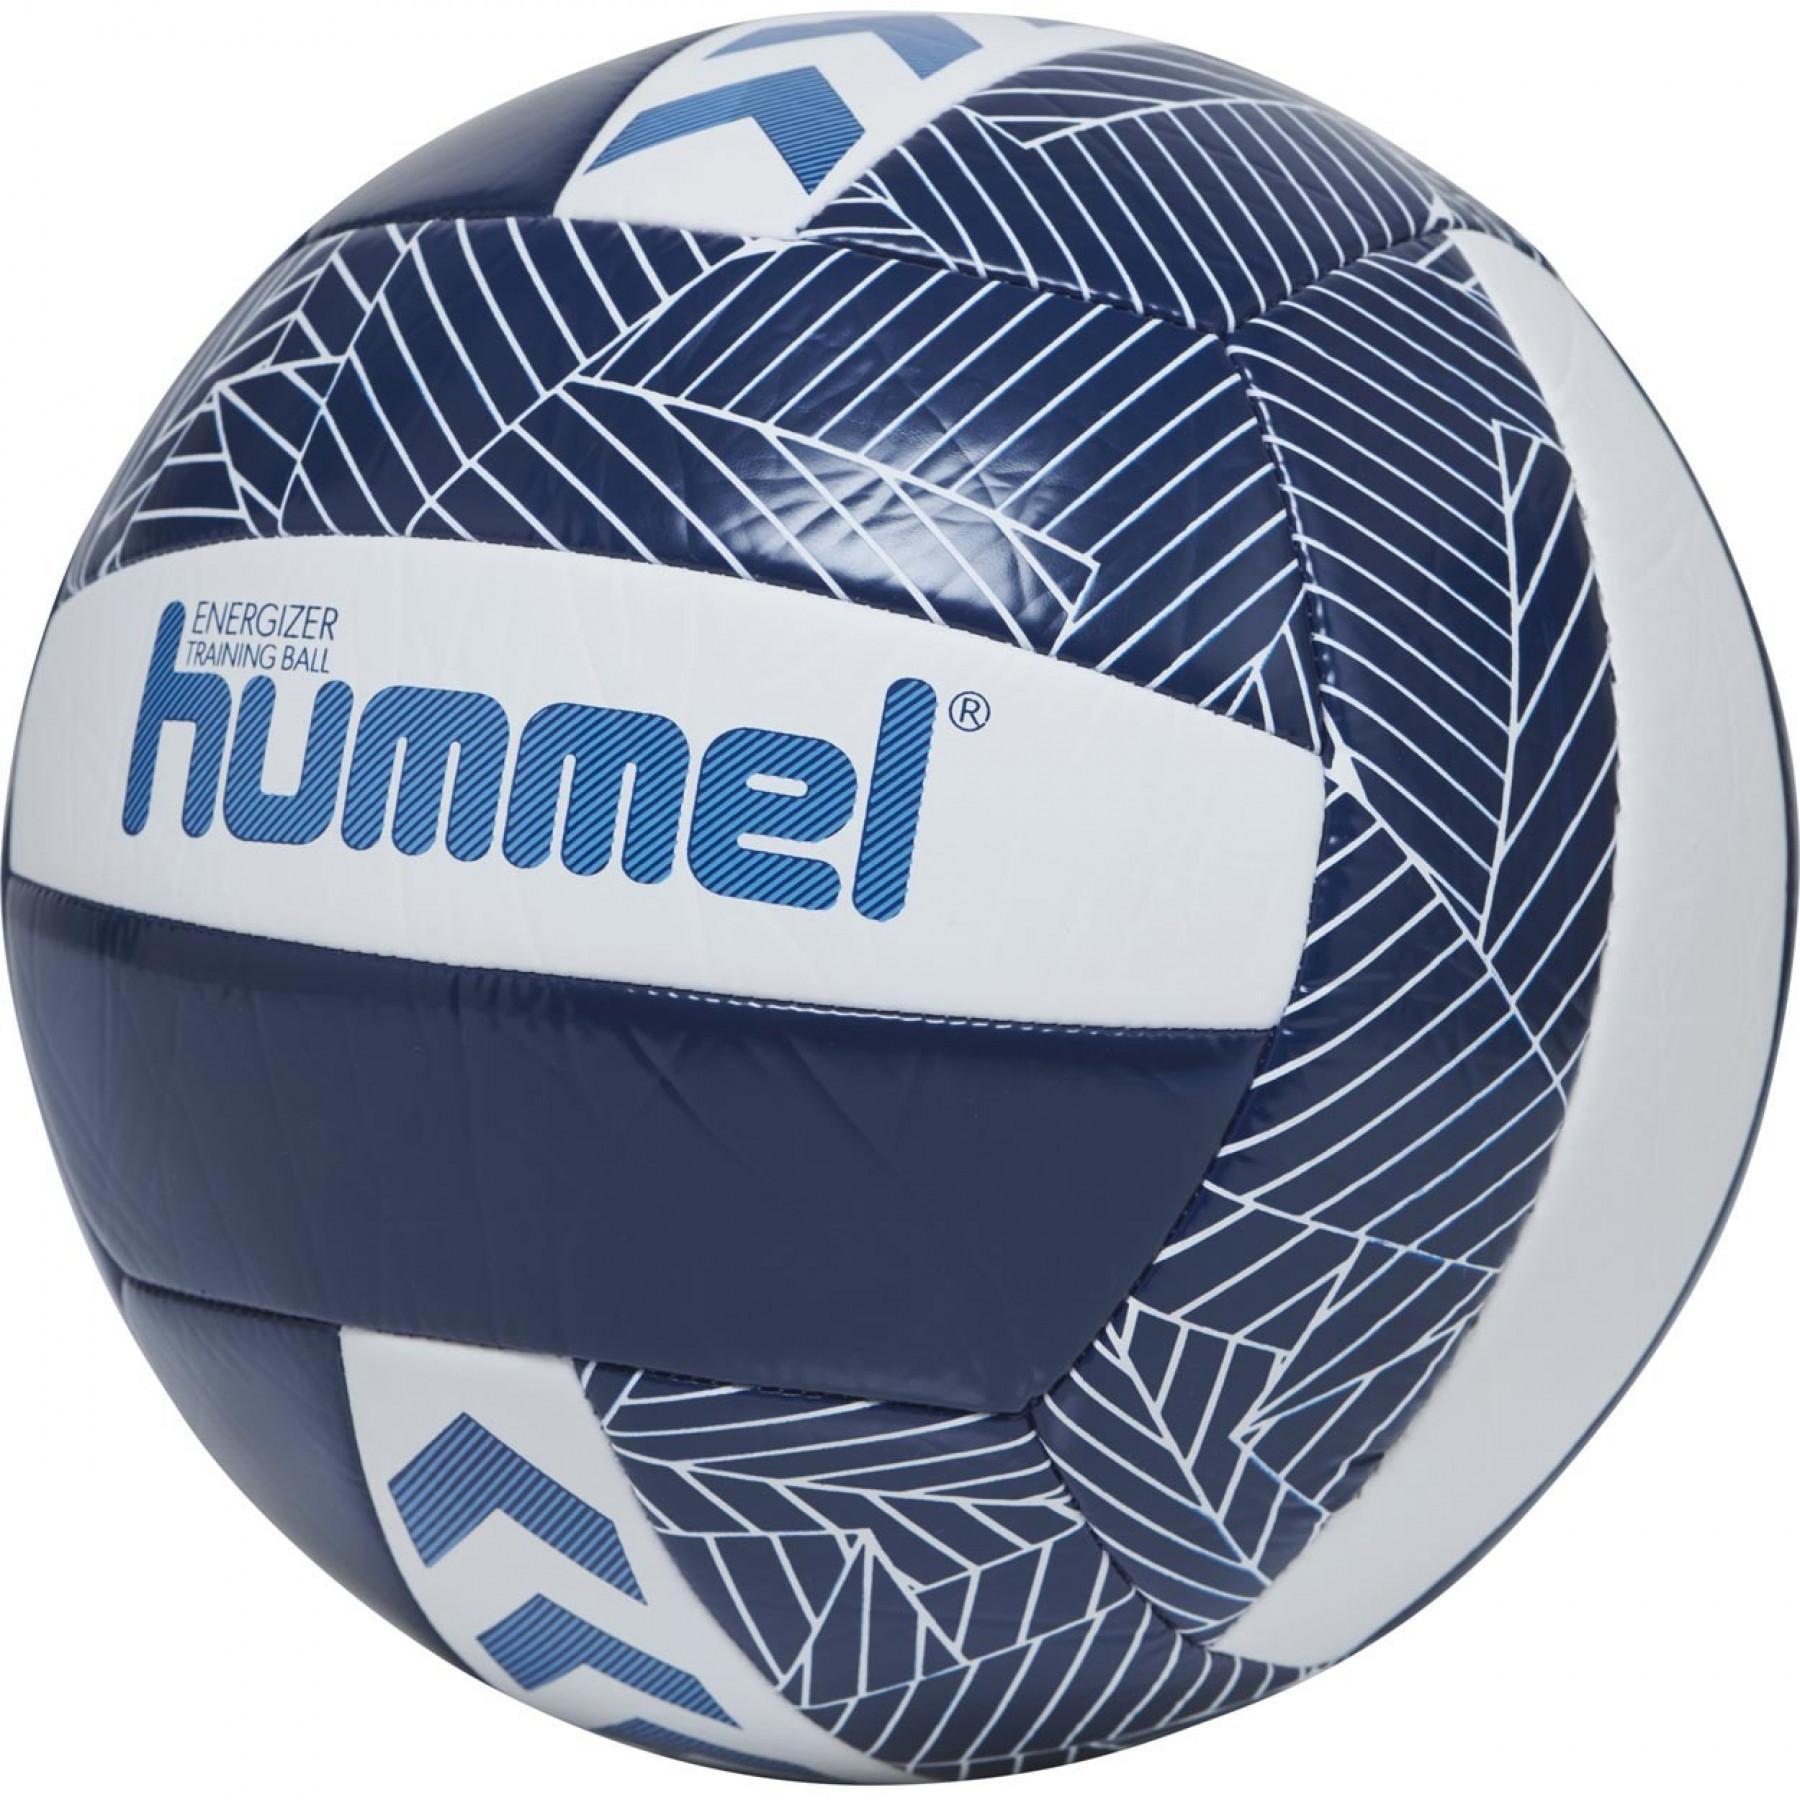 Lot de 3 Ballons Volley-ball Hummel Energizer [Taille  5]